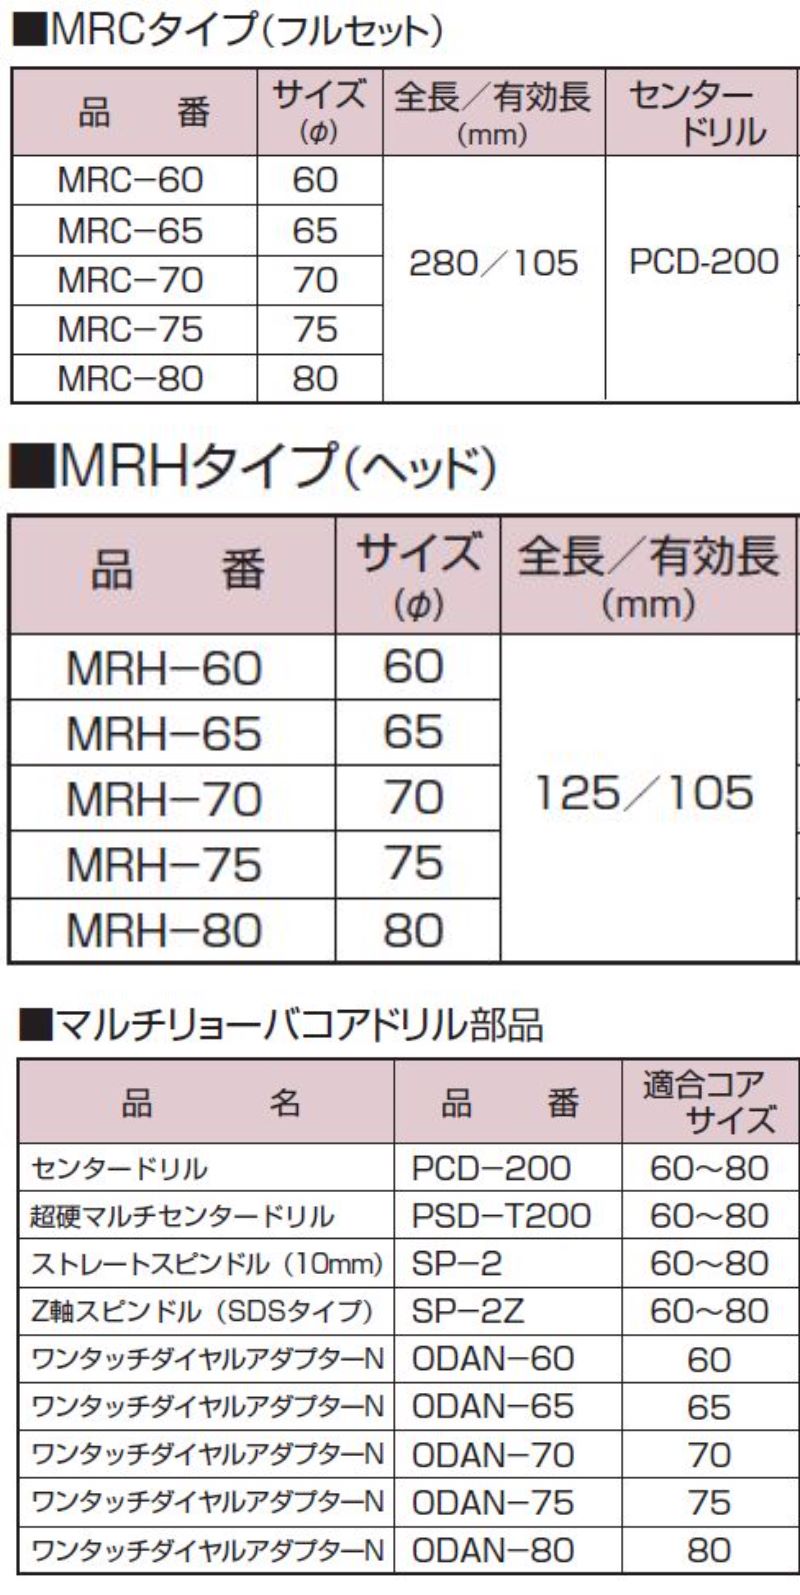 ハウスBM ワンタッチ ダイヤルアダプター ODA-65(品)